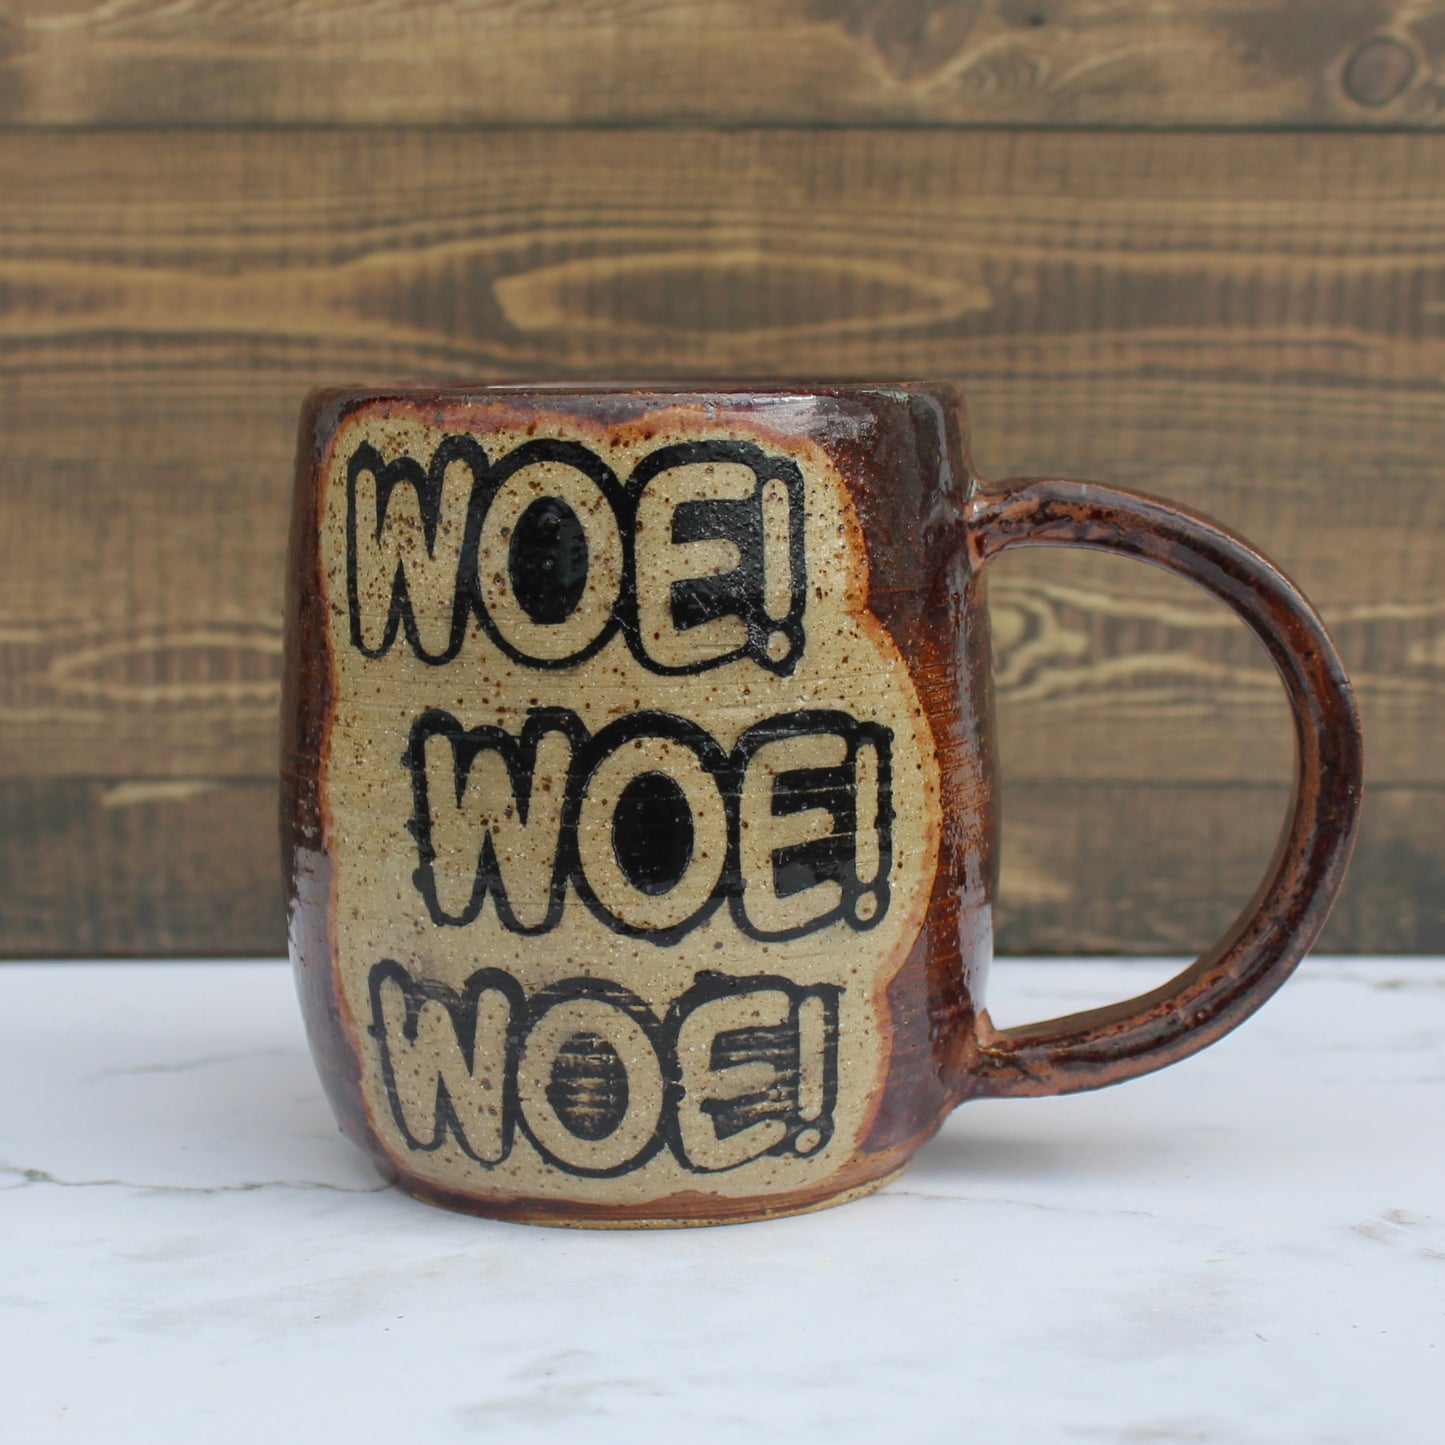 “Woe! Woe! Woe!” Mug